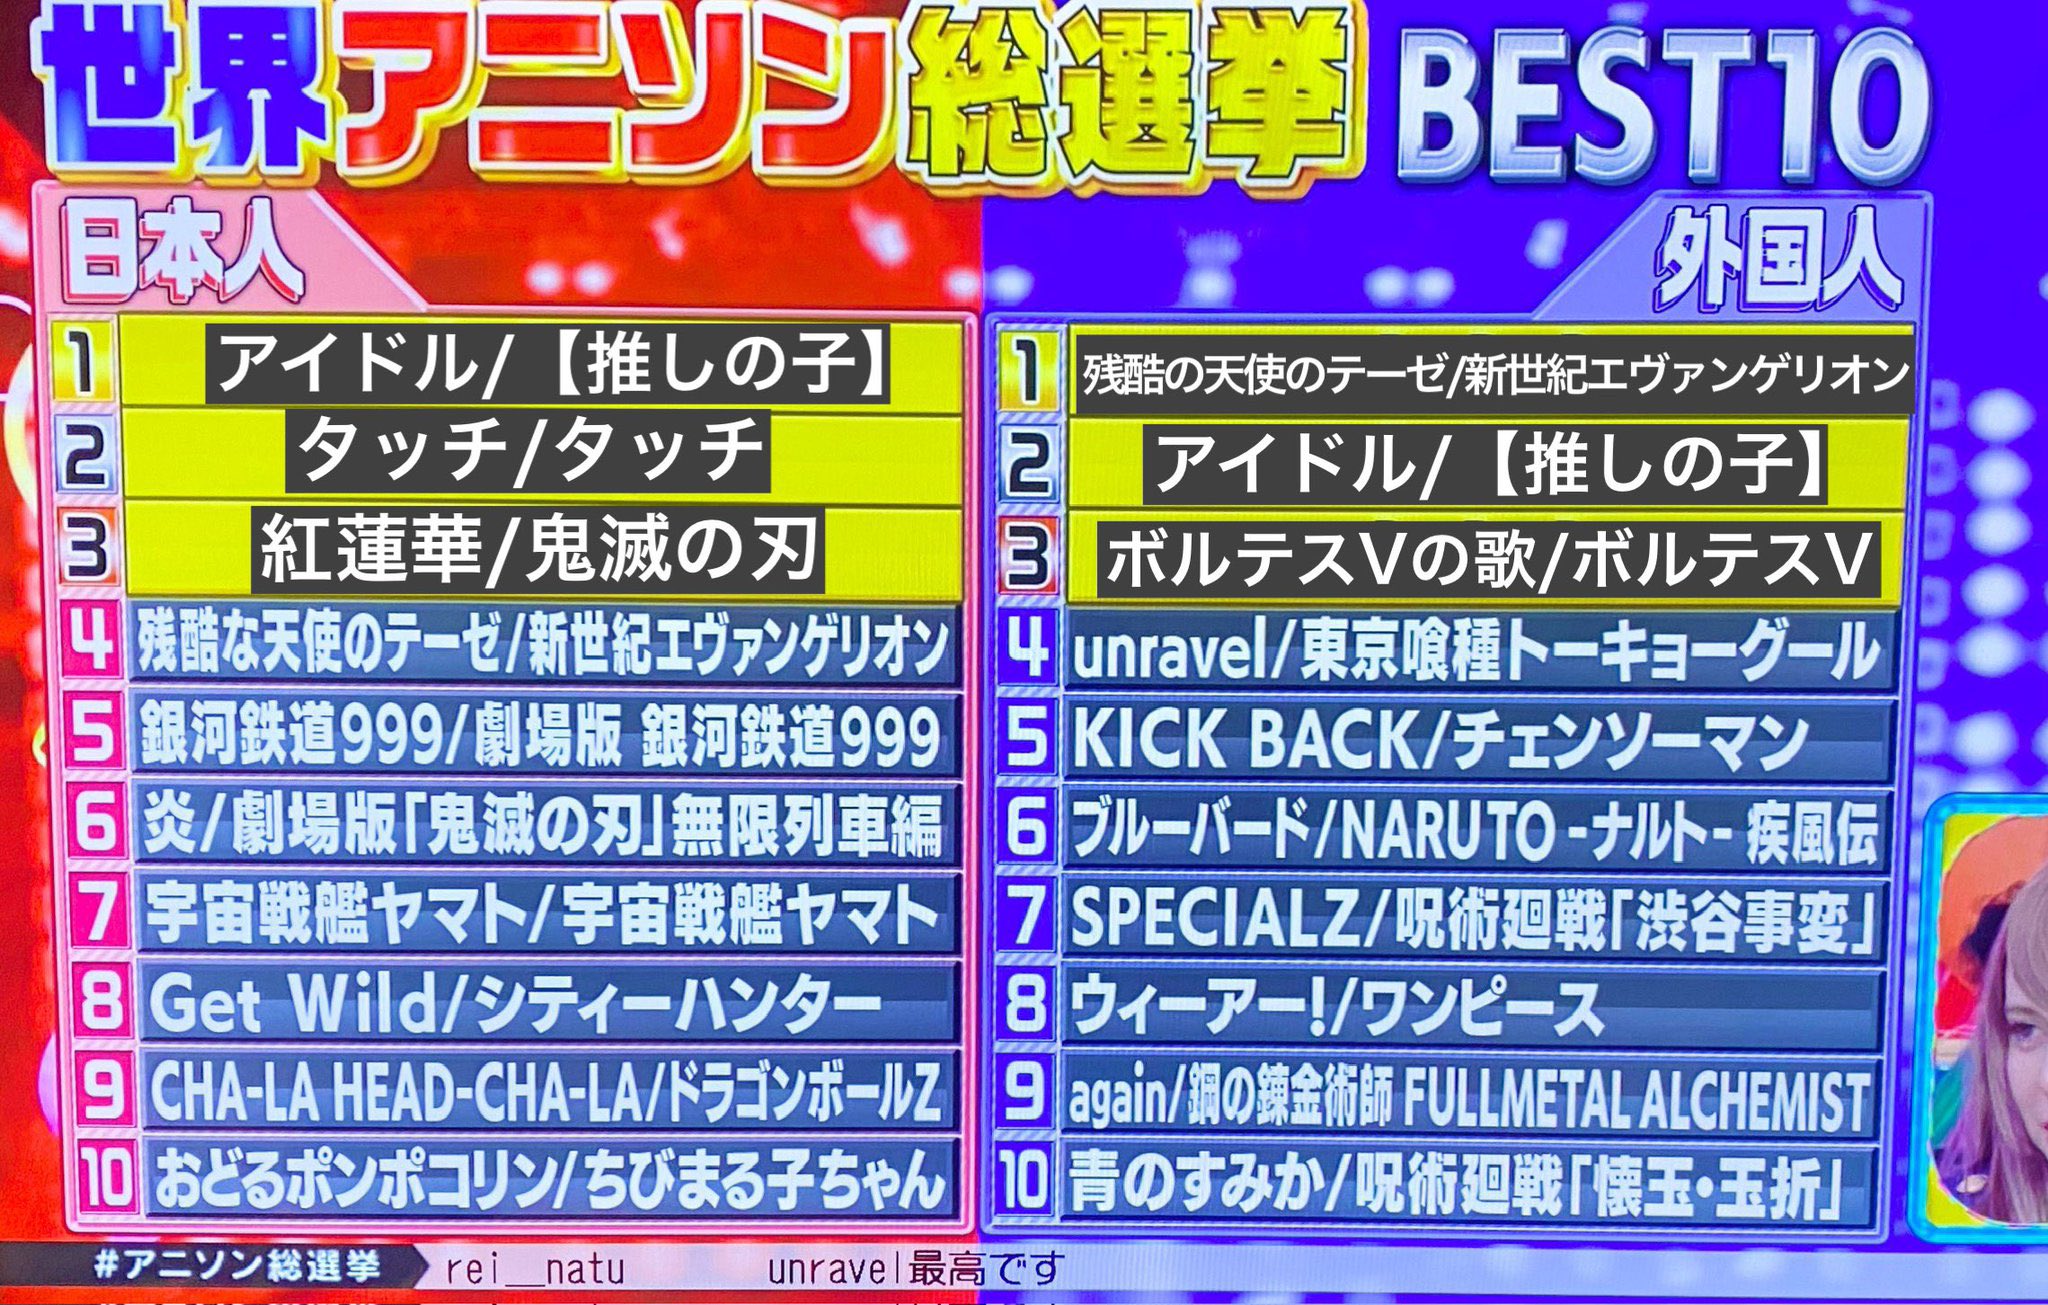 日本朝日電視臺票選動漫歌曲排行 外國人最愛《殘酷天使的行動綱領》